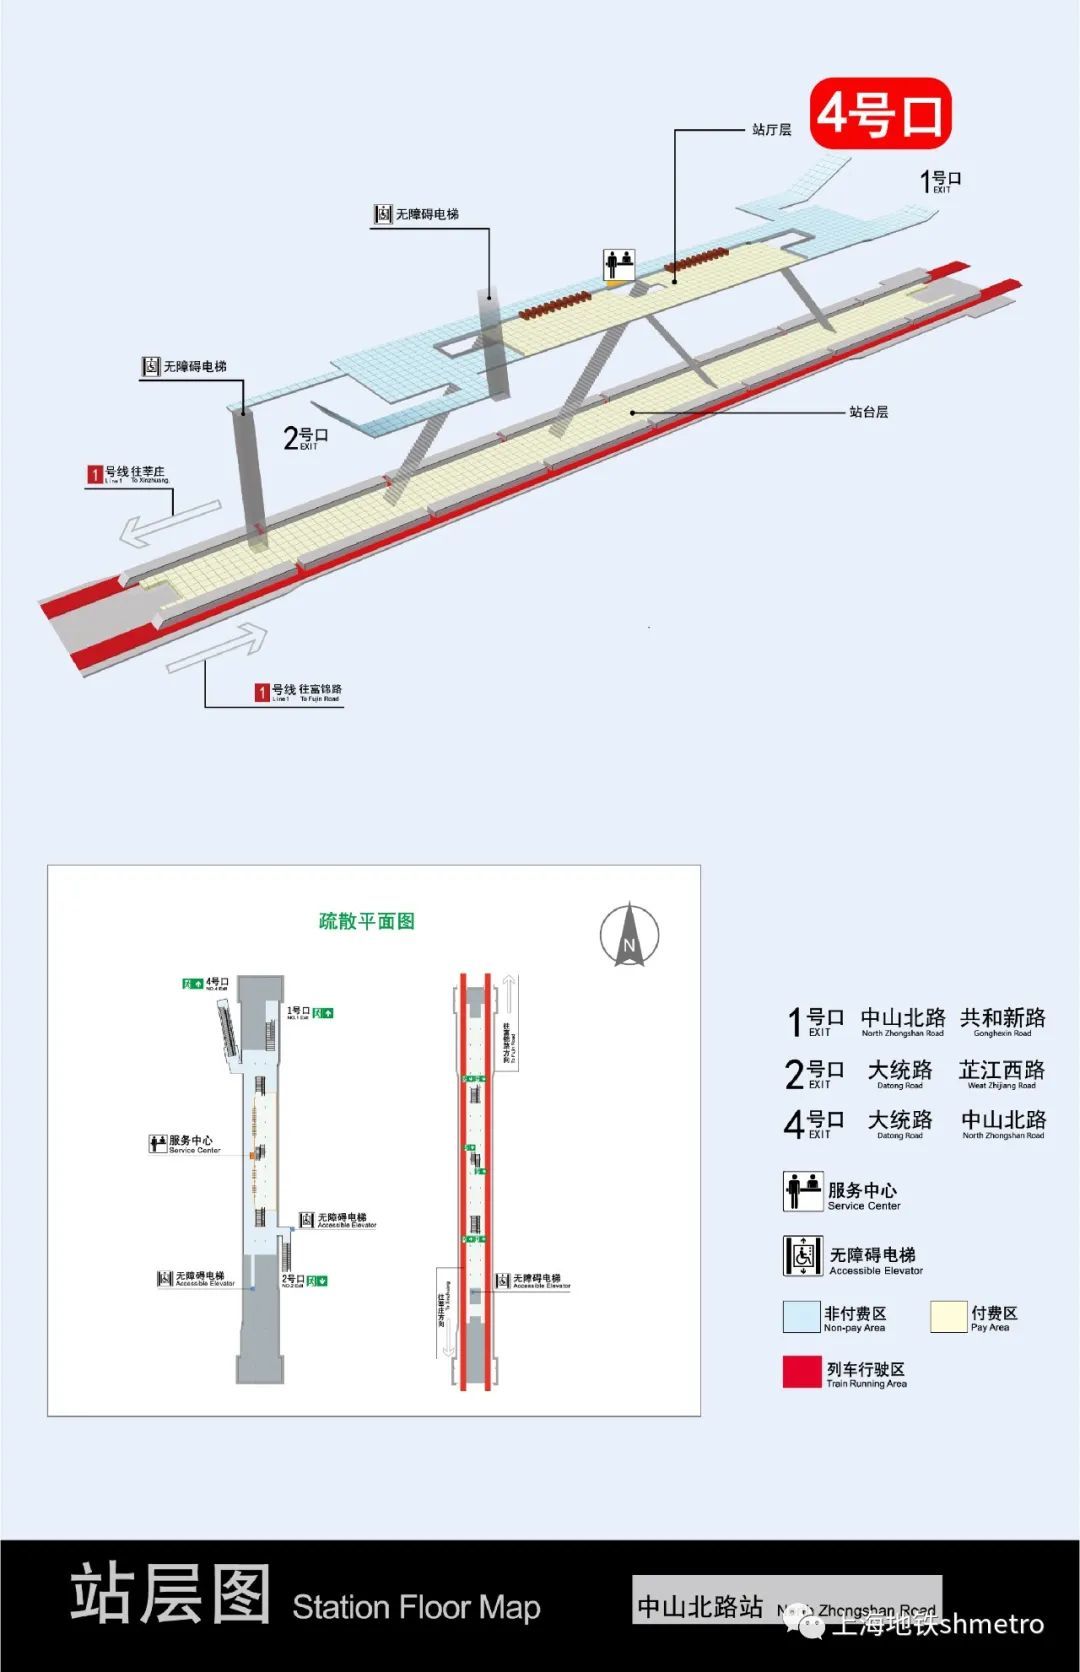 为配合出入口自动扶梯加装施工，1号线中山北路站4号出入口 自2023年4月1日起封闭施工，预计封闭周期4个月。